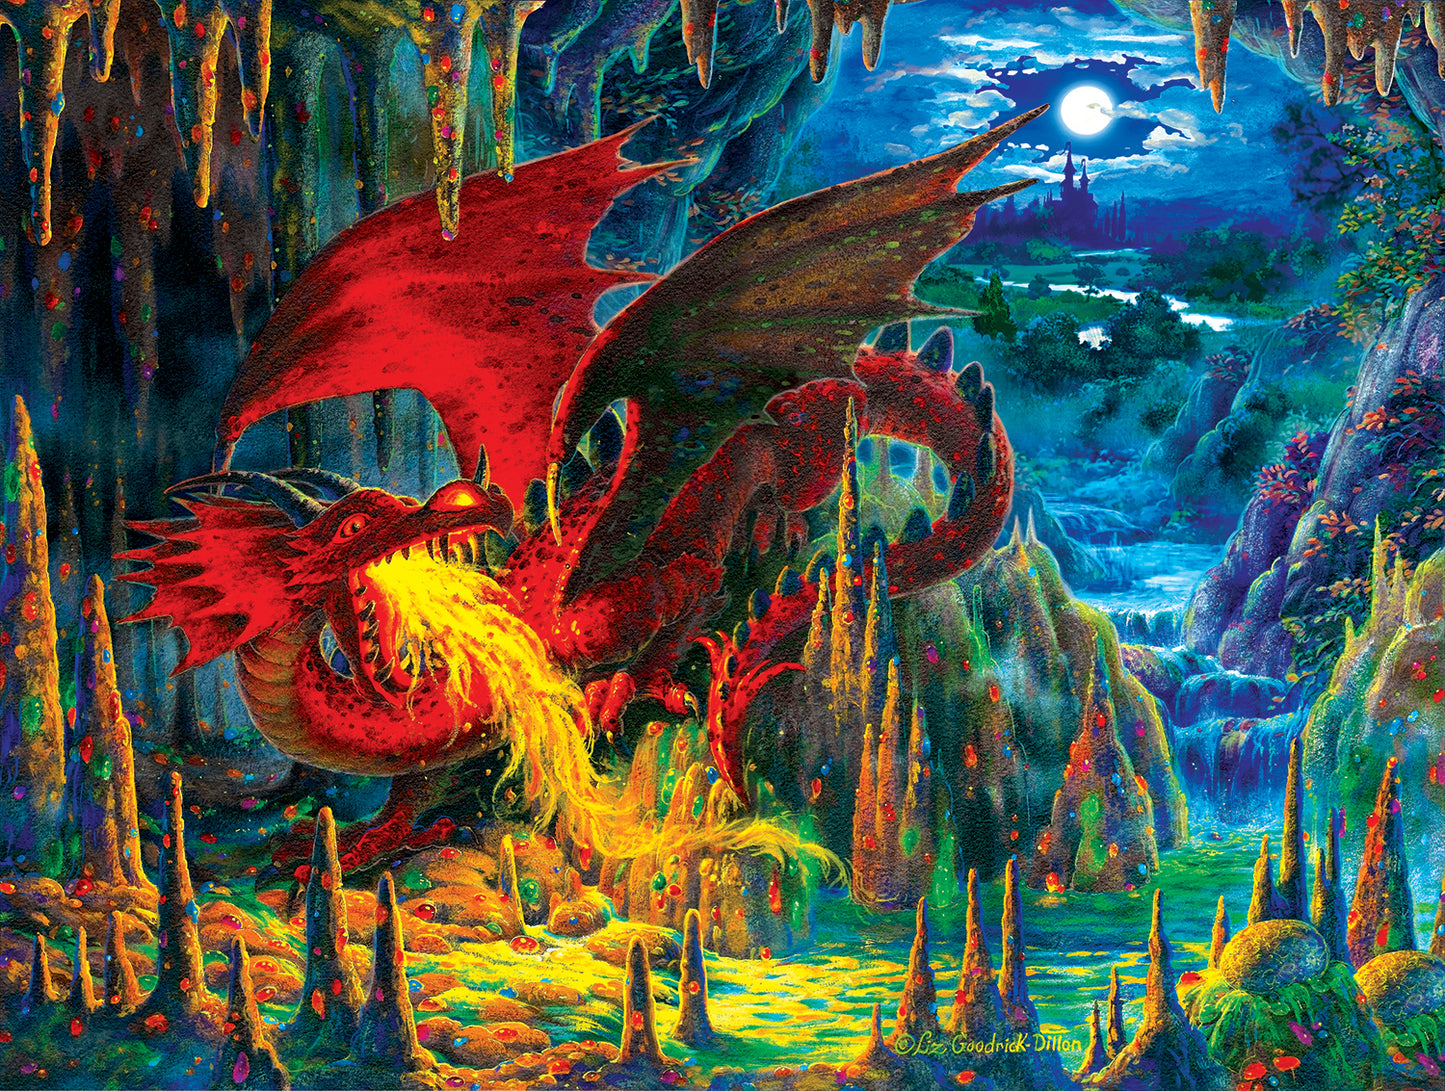 Fire Dragon of Emerald af Liz Goodrick Dillon, 500 brikker puslespil